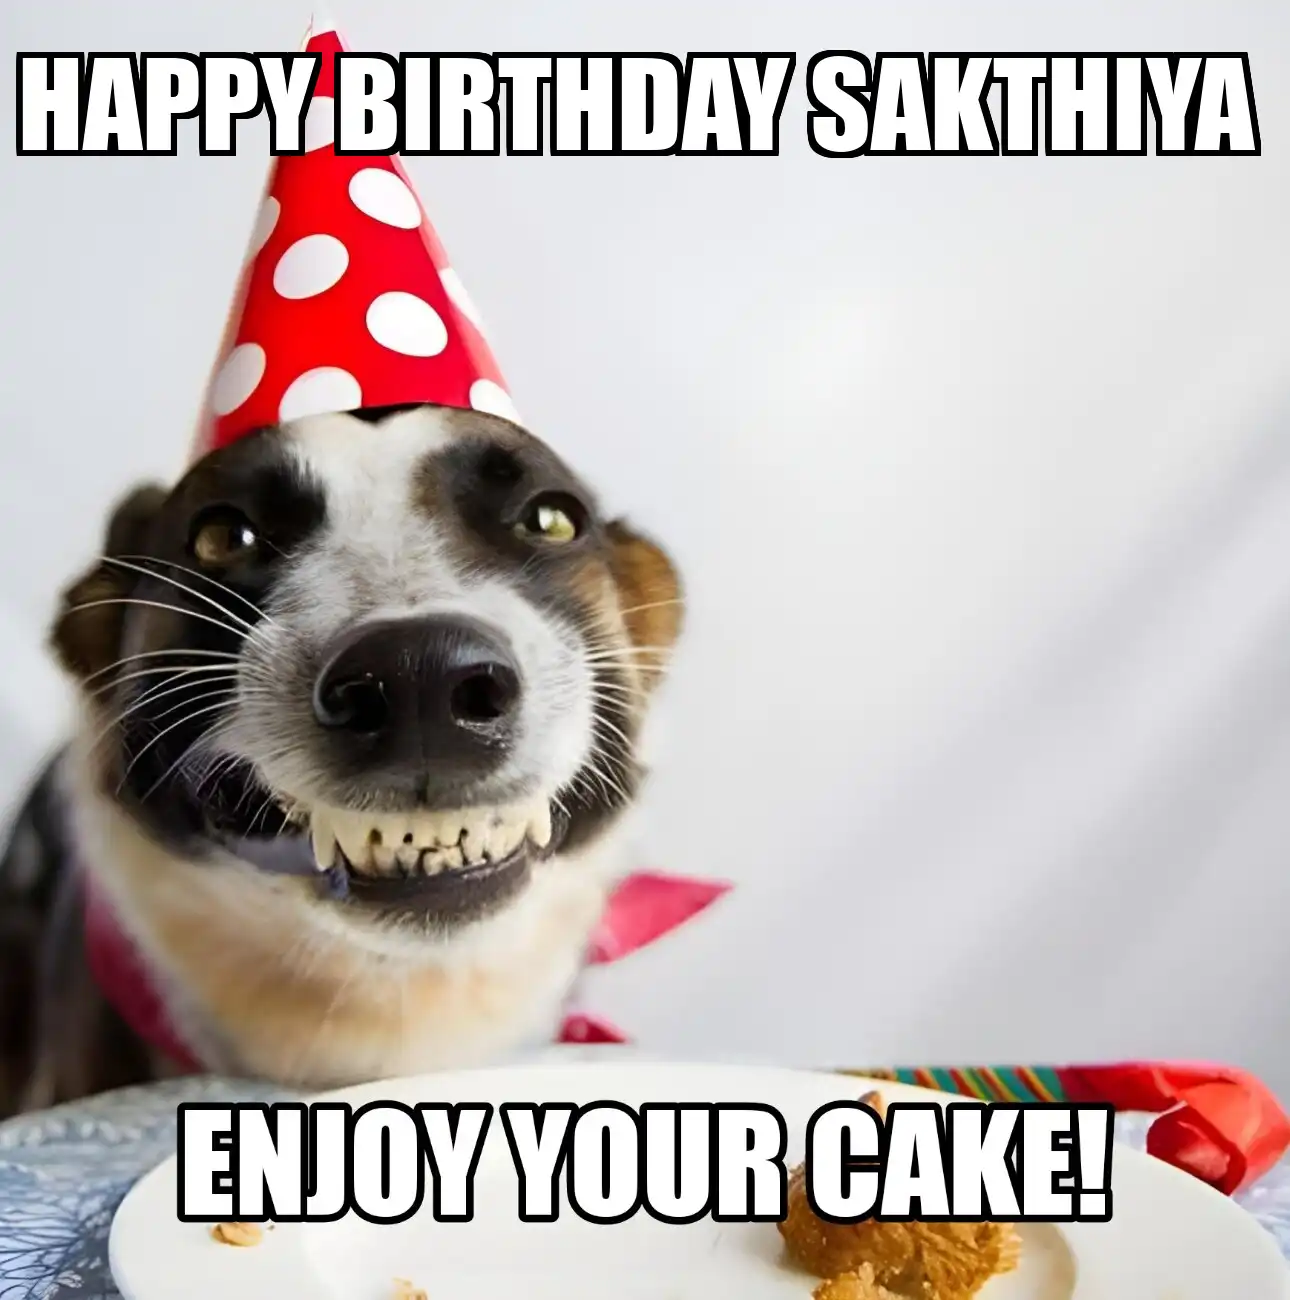 Happy Birthday Sakthiya Enjoy Your Cake Dog Meme